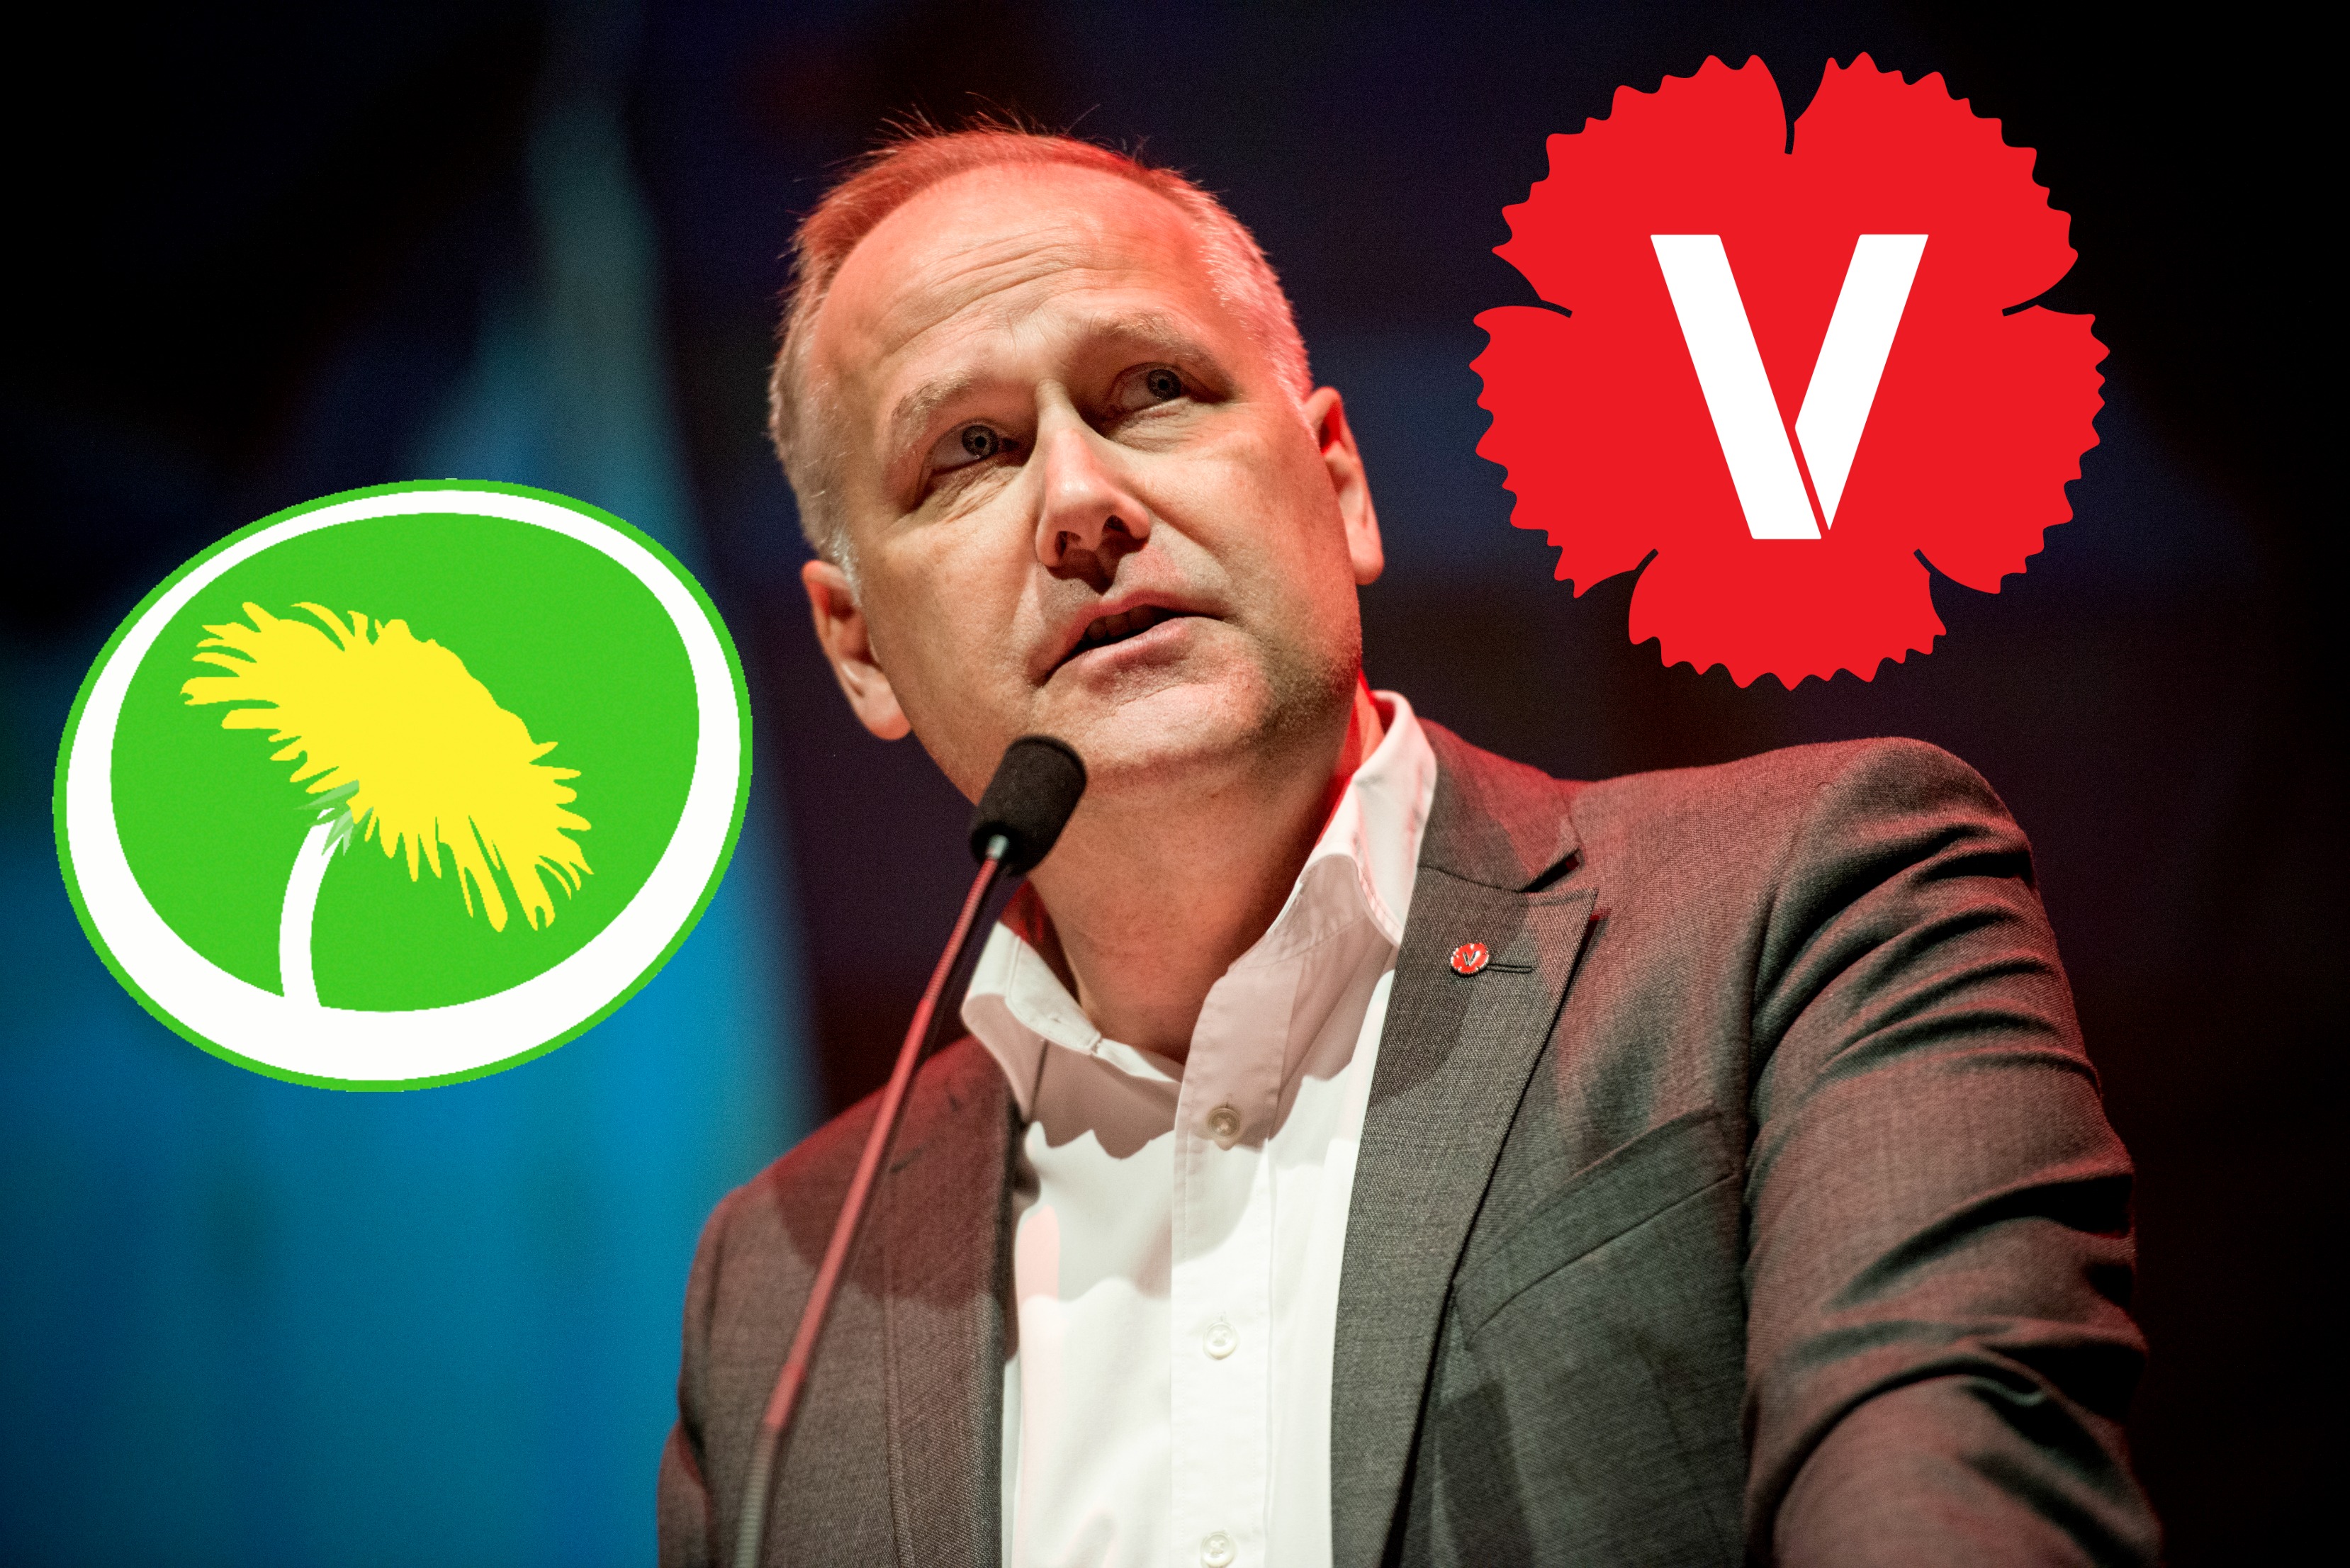 Jonas Sjöstedt är partiledare för Vänsterpartiet, så självklart tycker han V:s politik är bättre, och här förklarar han vad han tycker är den viktigaste skillnaden men V och MP i klimatfrågor. 